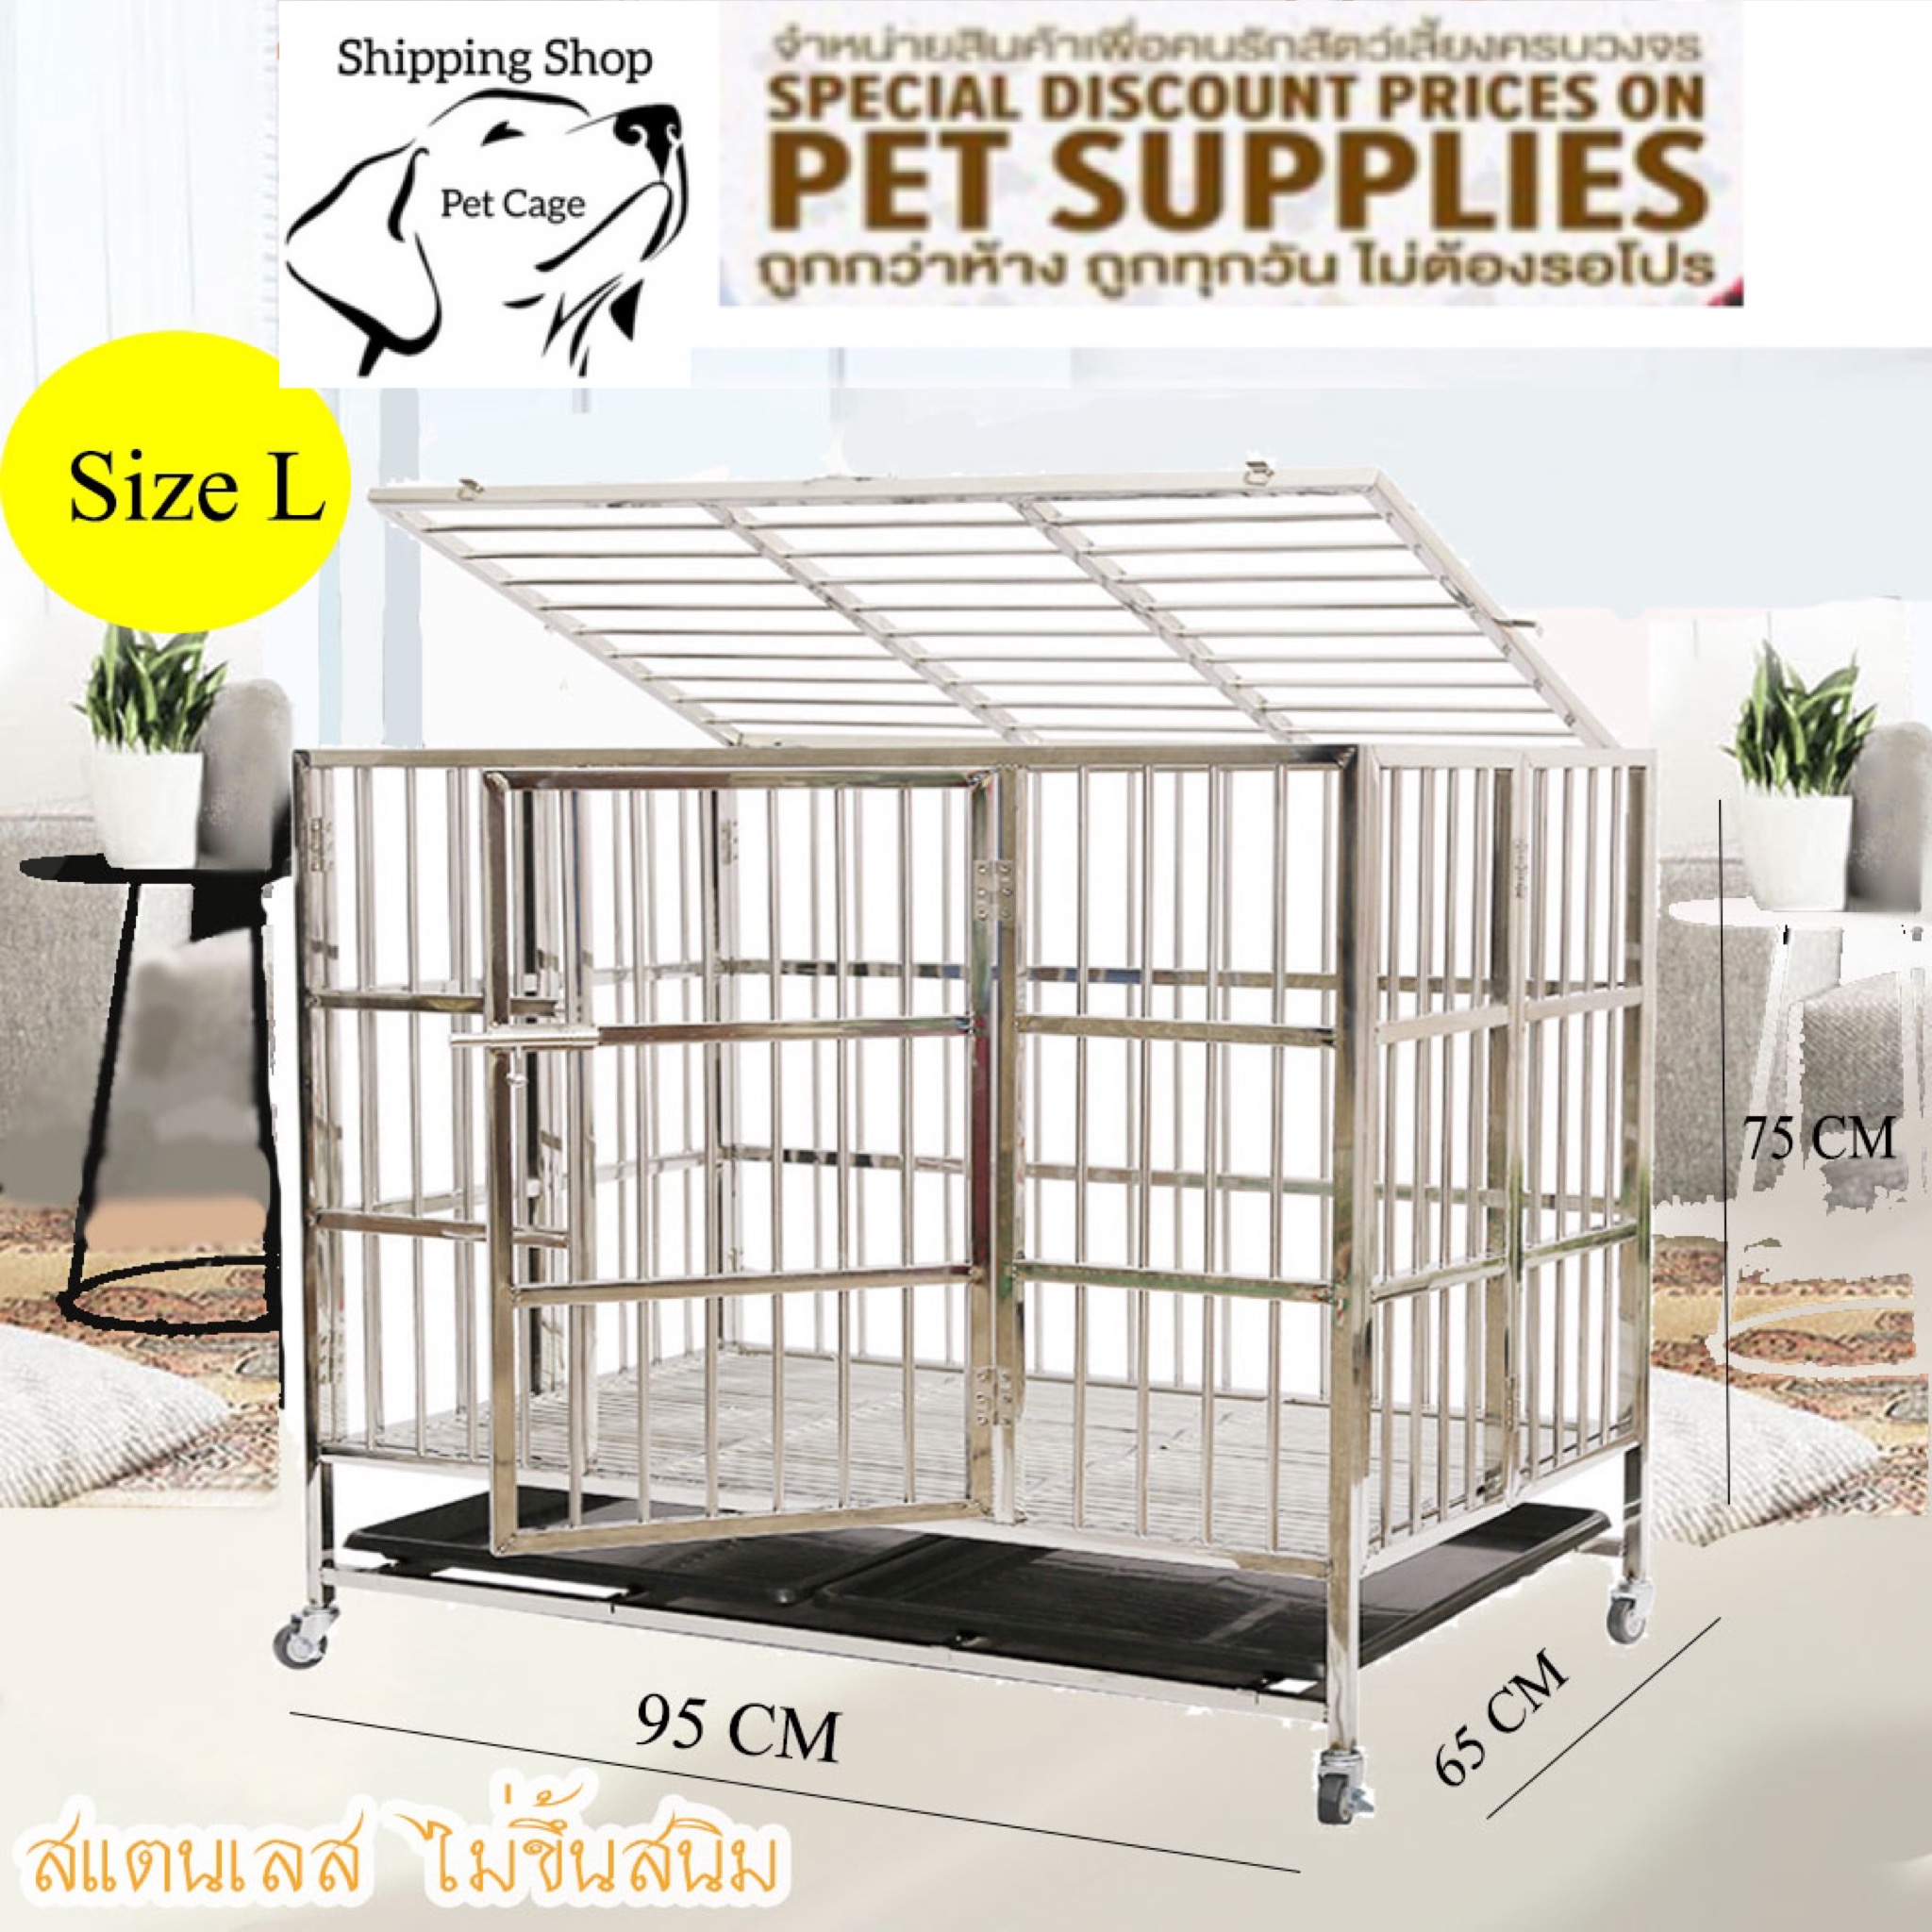 กรงสุนัข Stainless กรงสแตนเลส แบบบานพับ (แบบท่อกลม) Stainless Steel cage  ขนาด กว้าง 95 cm ลึก 65 cm สูง 75 cm